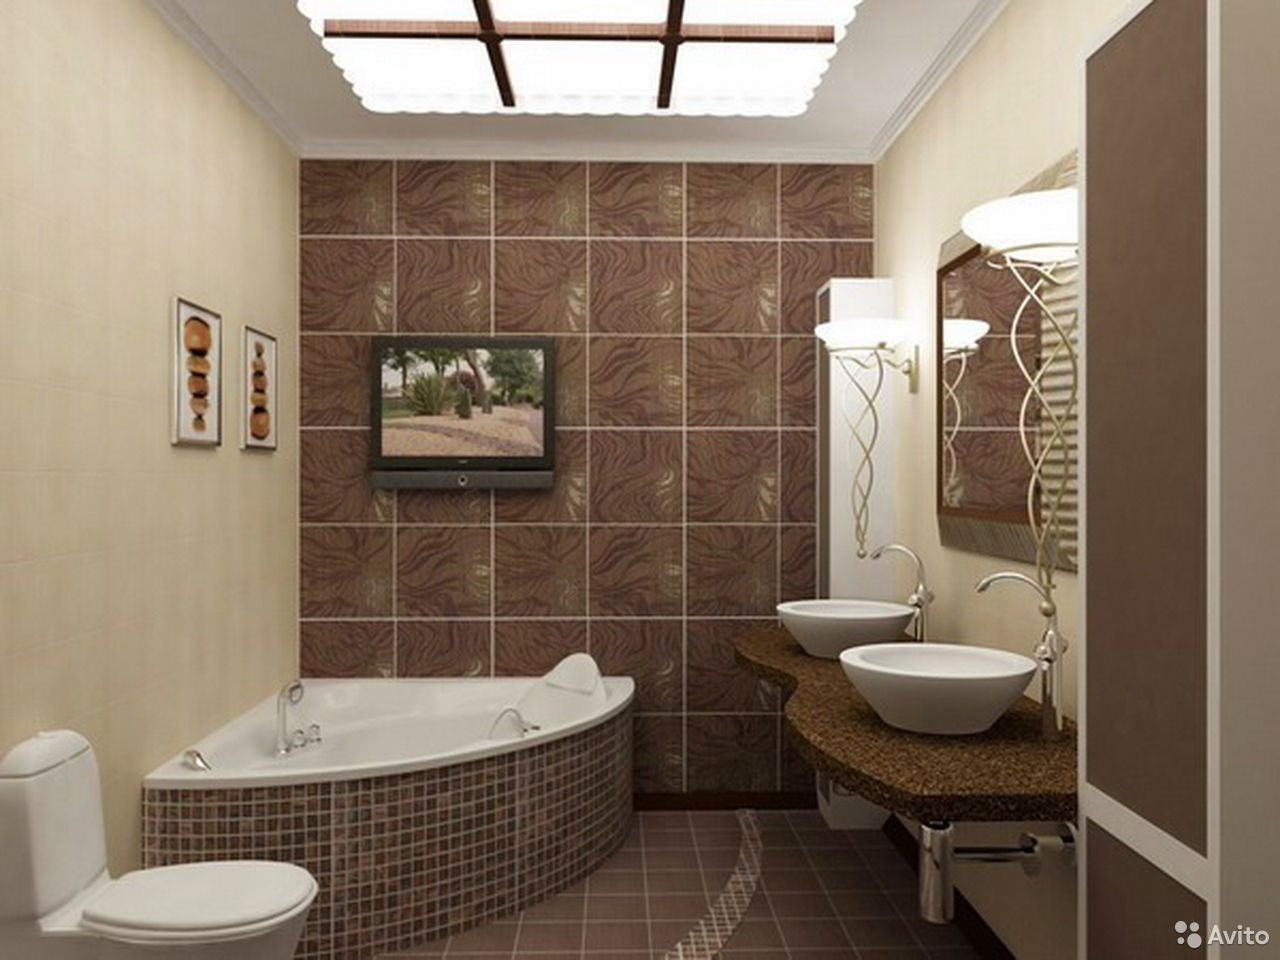 Ванна дизайн коричневая. Ванная в коричнево-бежевых тонах. Плитка в ванную коричневая. Ванная комната с коричневой плиткой. Коричневый кафель в ванной.